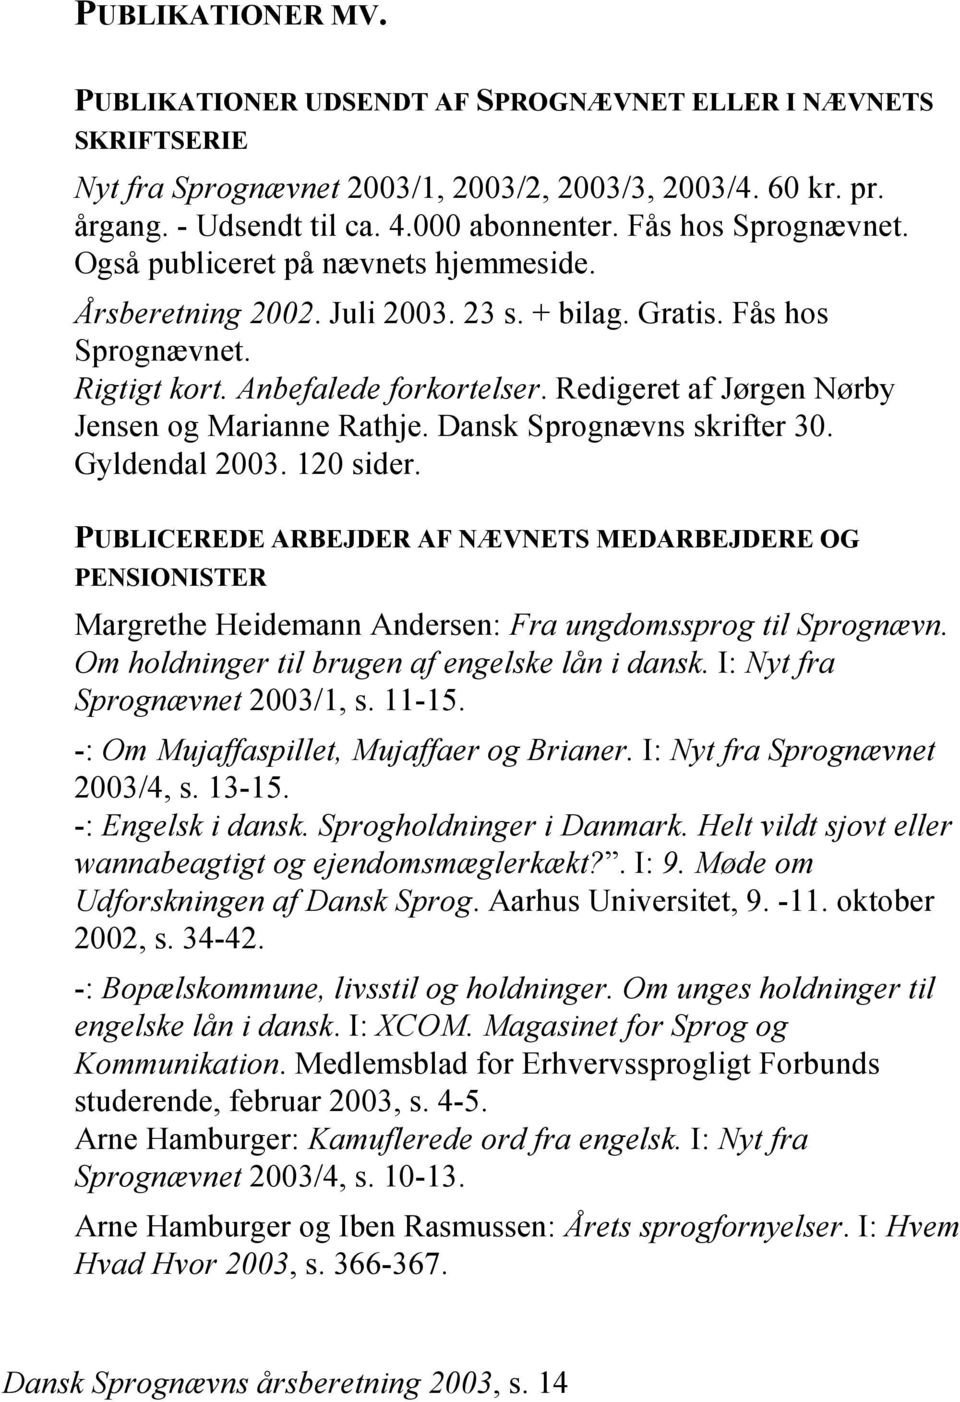 Redigeret af Jørgen Nørby Jensen og Marianne Rathje. Dansk Sprognævns skrifter 30. Gyldendal 2003. 120 sider.